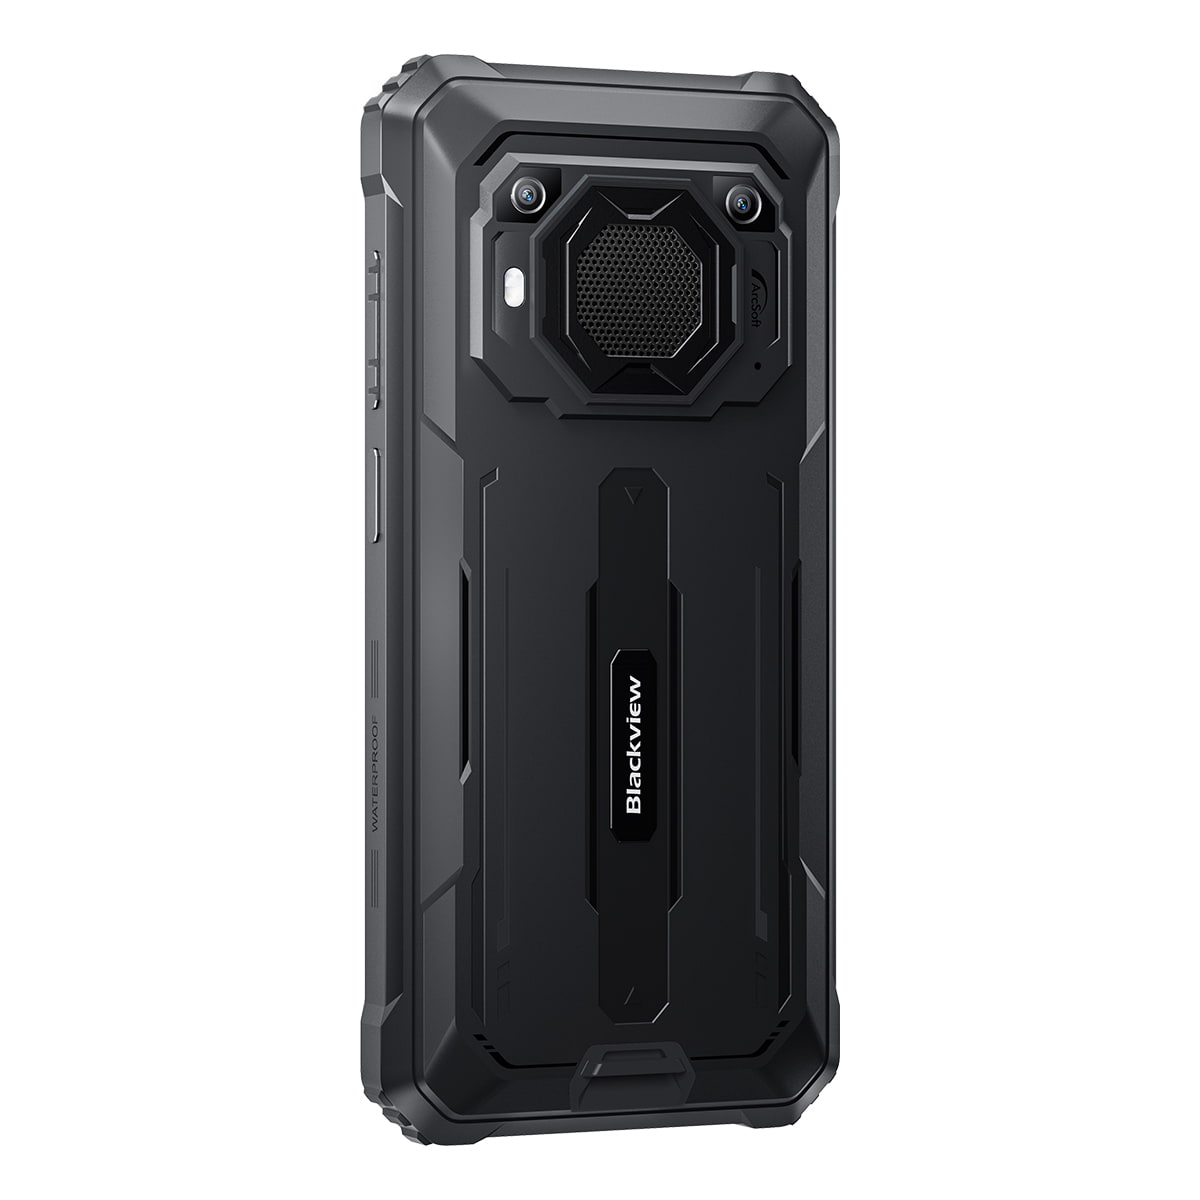 Blackview BV6200 - Smartphone antichoc - Nouveauté 2023 - Écran 6.5'', ROM 64Go RAM 4Go, Android 13, Enorme batterie de 13 000 mAh,Photo 13 Mpx